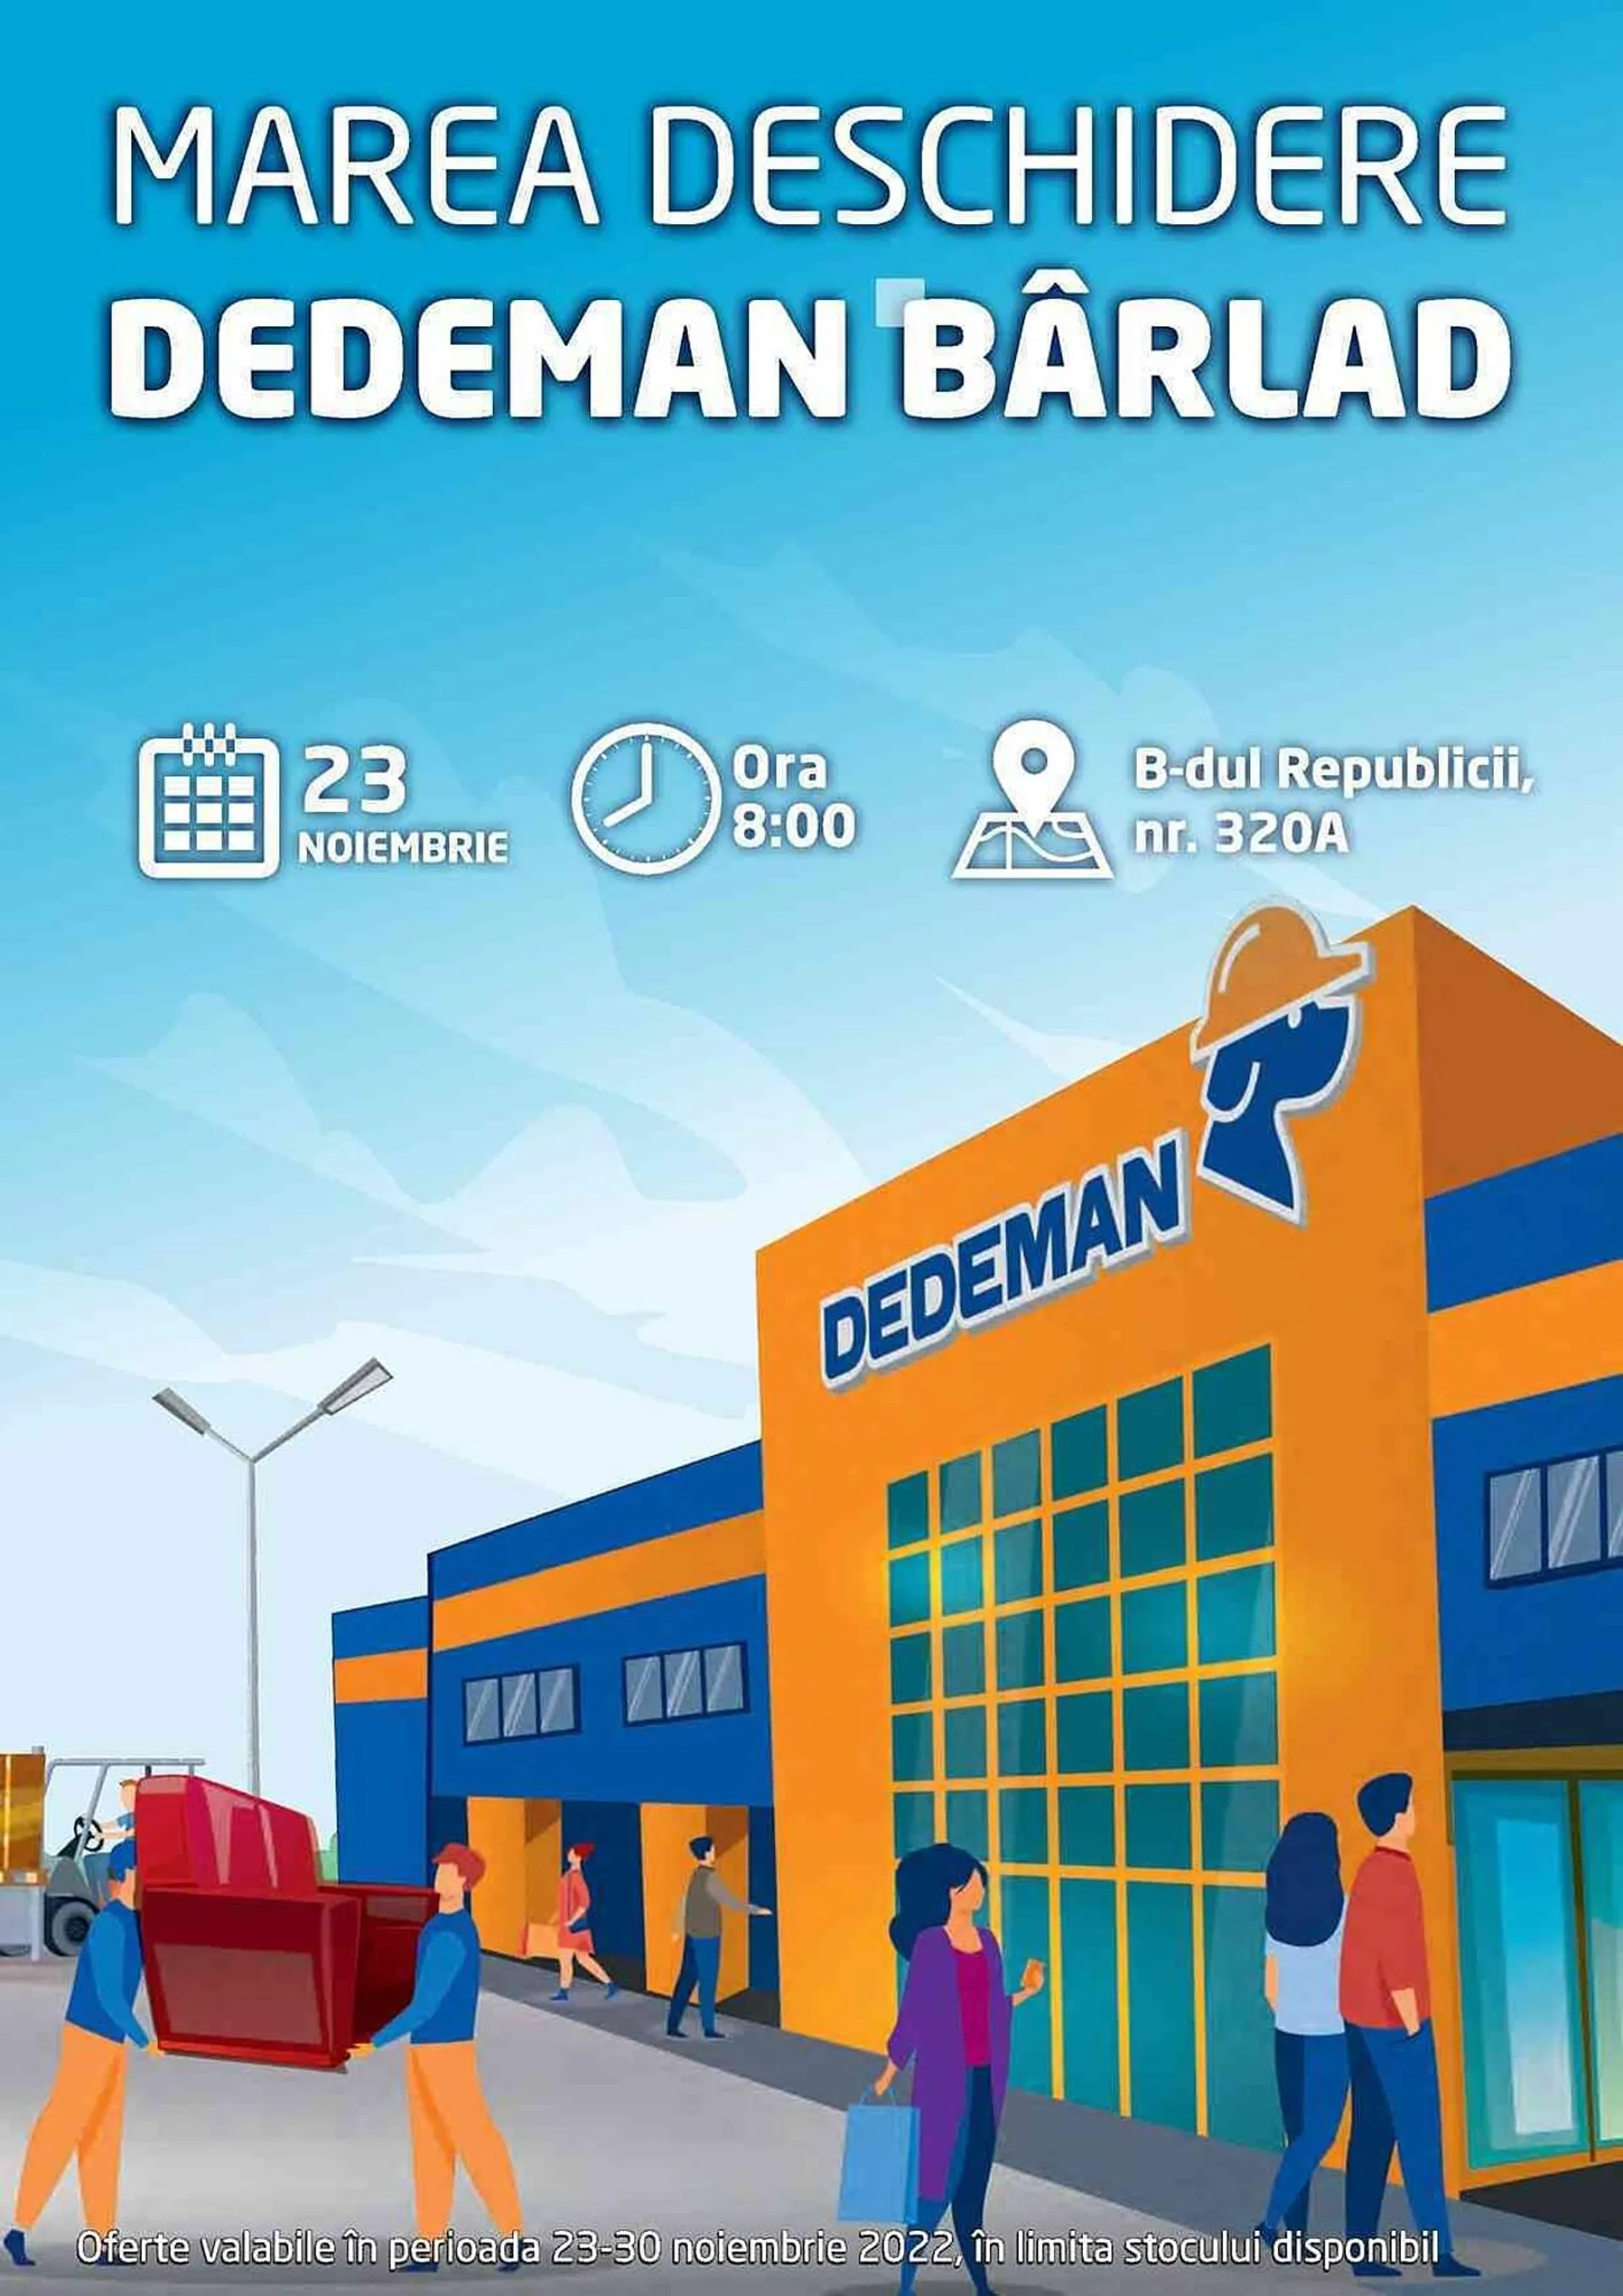 Dedeman catalog - 1